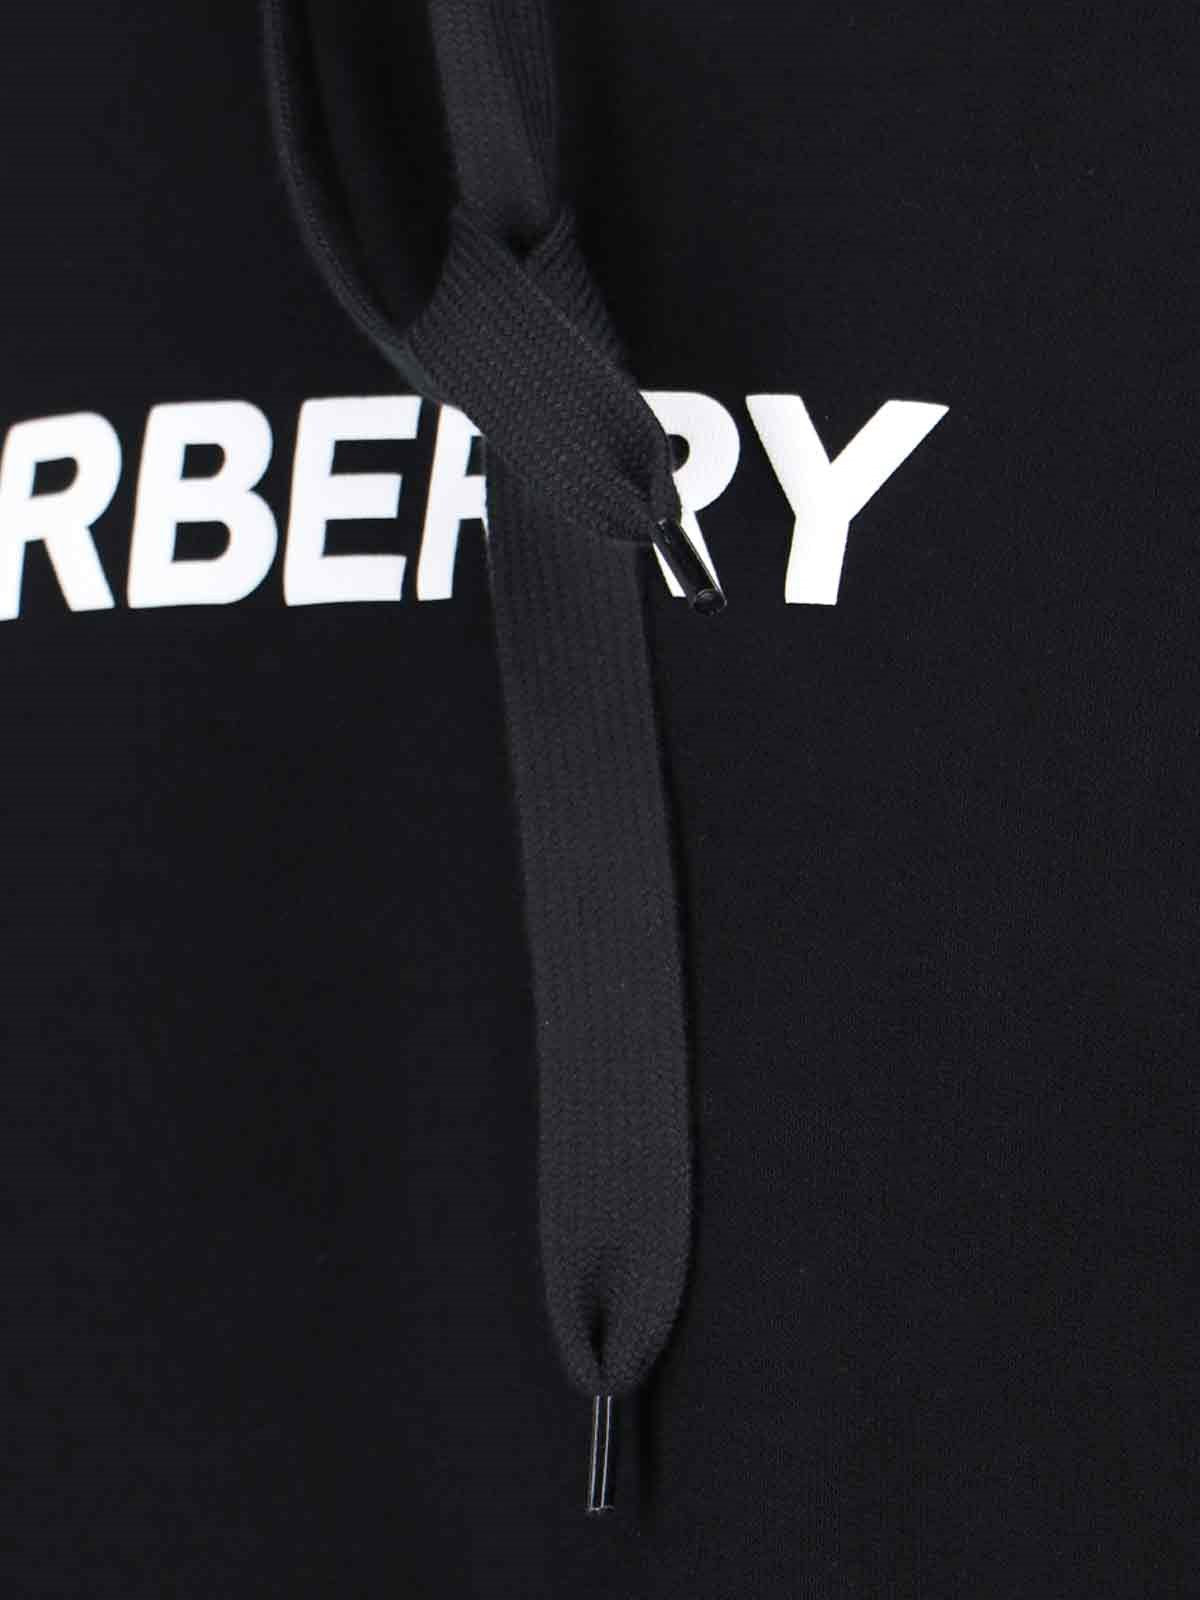 Burberry Felpa Cappuccio logo-felpe con cappuccio-Burberry-Felpa cappuccio logo Burberry, in cotone nero, coulisse, stampa logo bianco fronte, una tasca maxi fronte, finiture a costine, orlo dritto.-Dresso